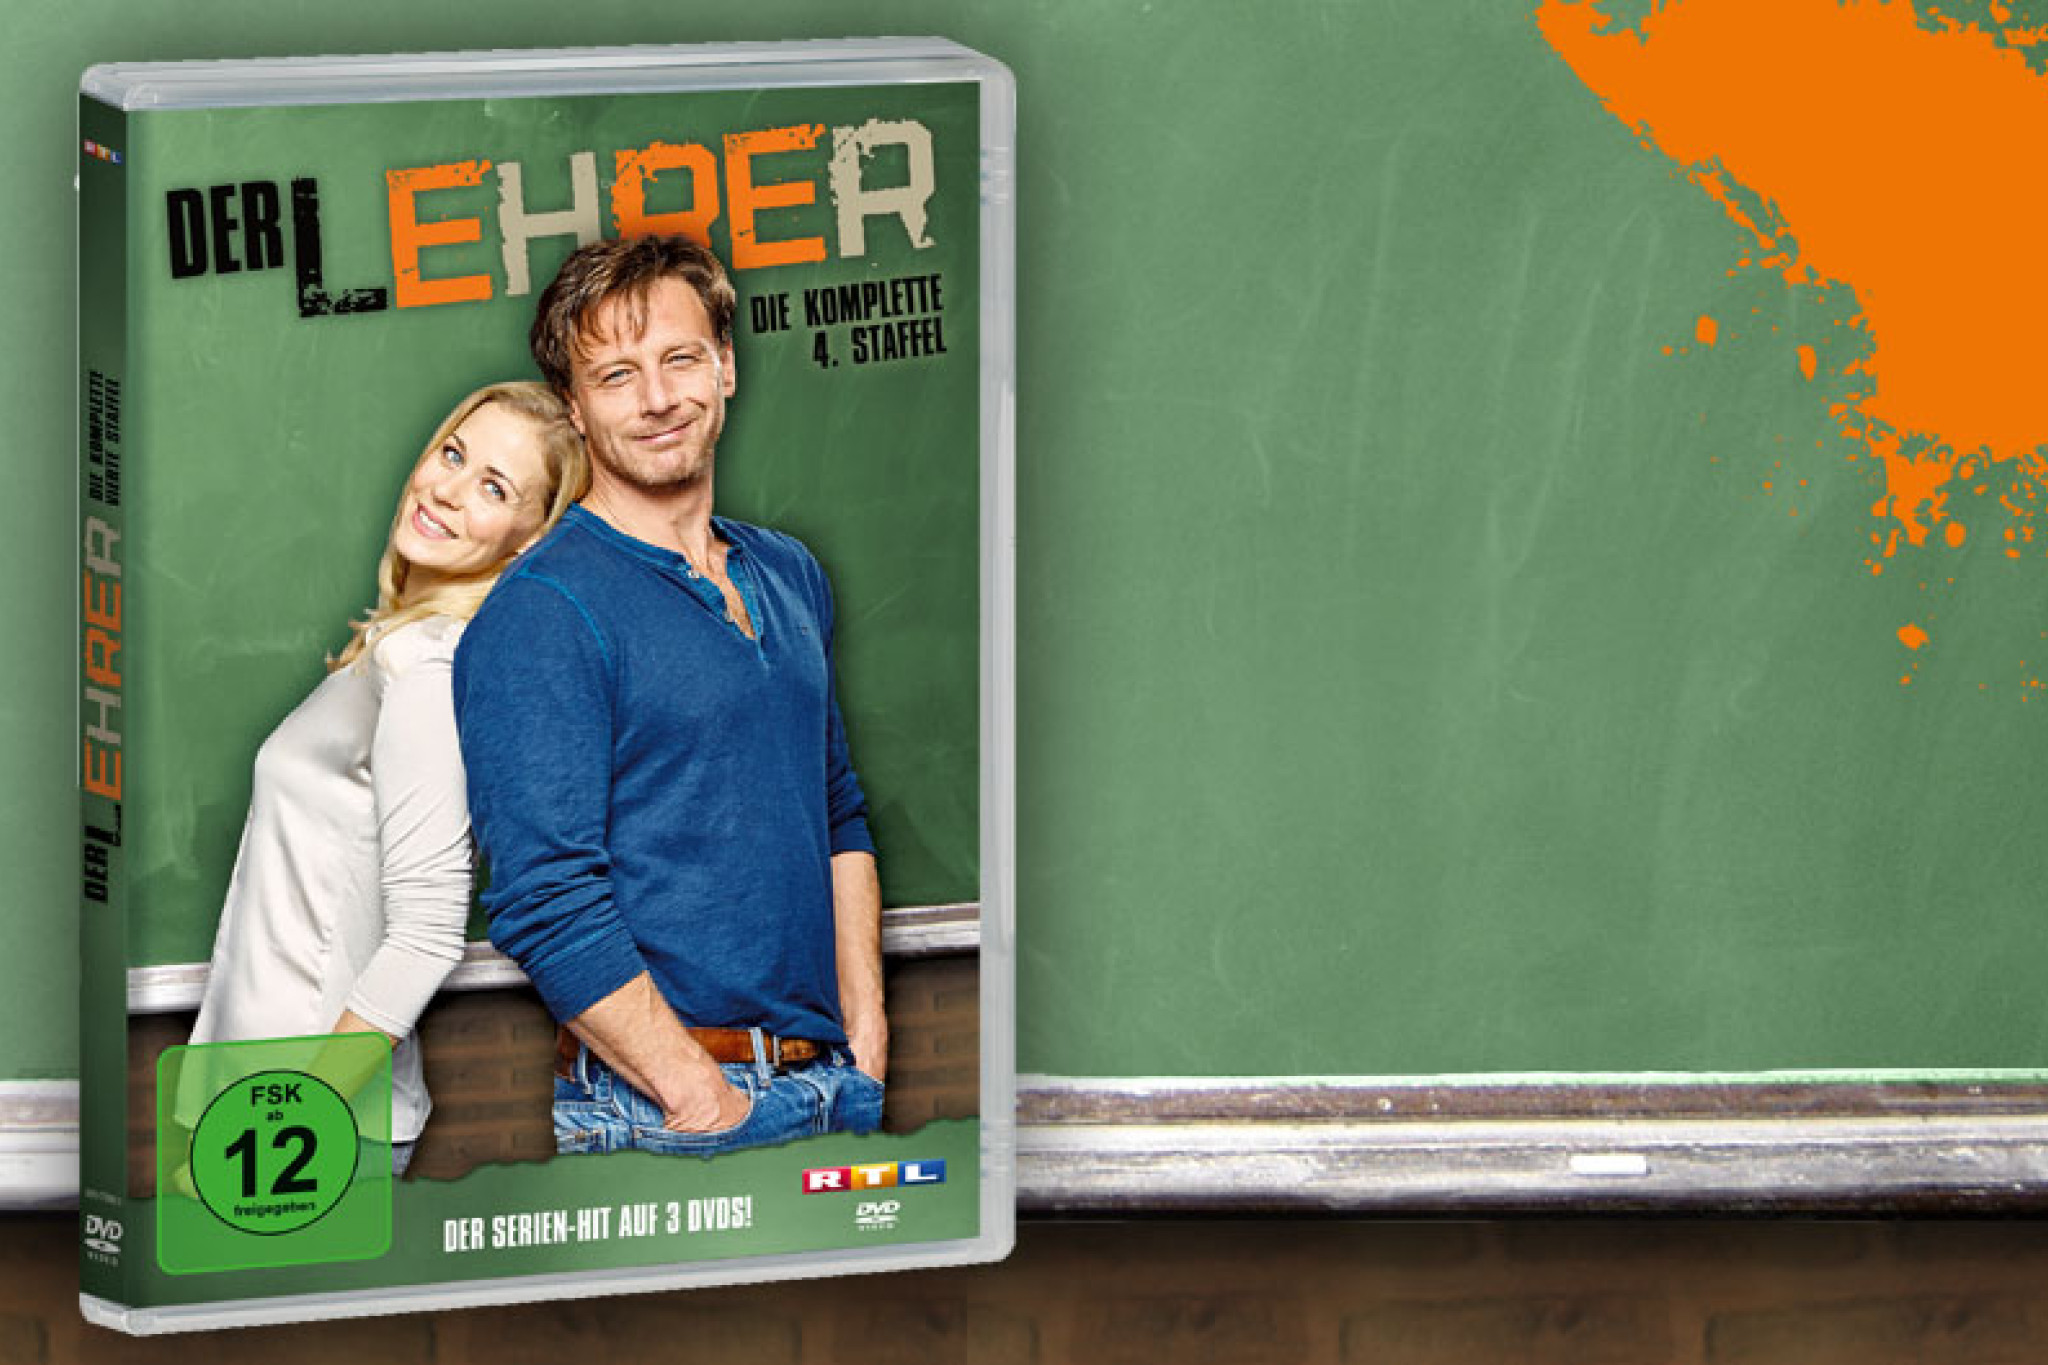 Die komplette vierte Staffel von "Der Lehrer" jetzt auf DVD